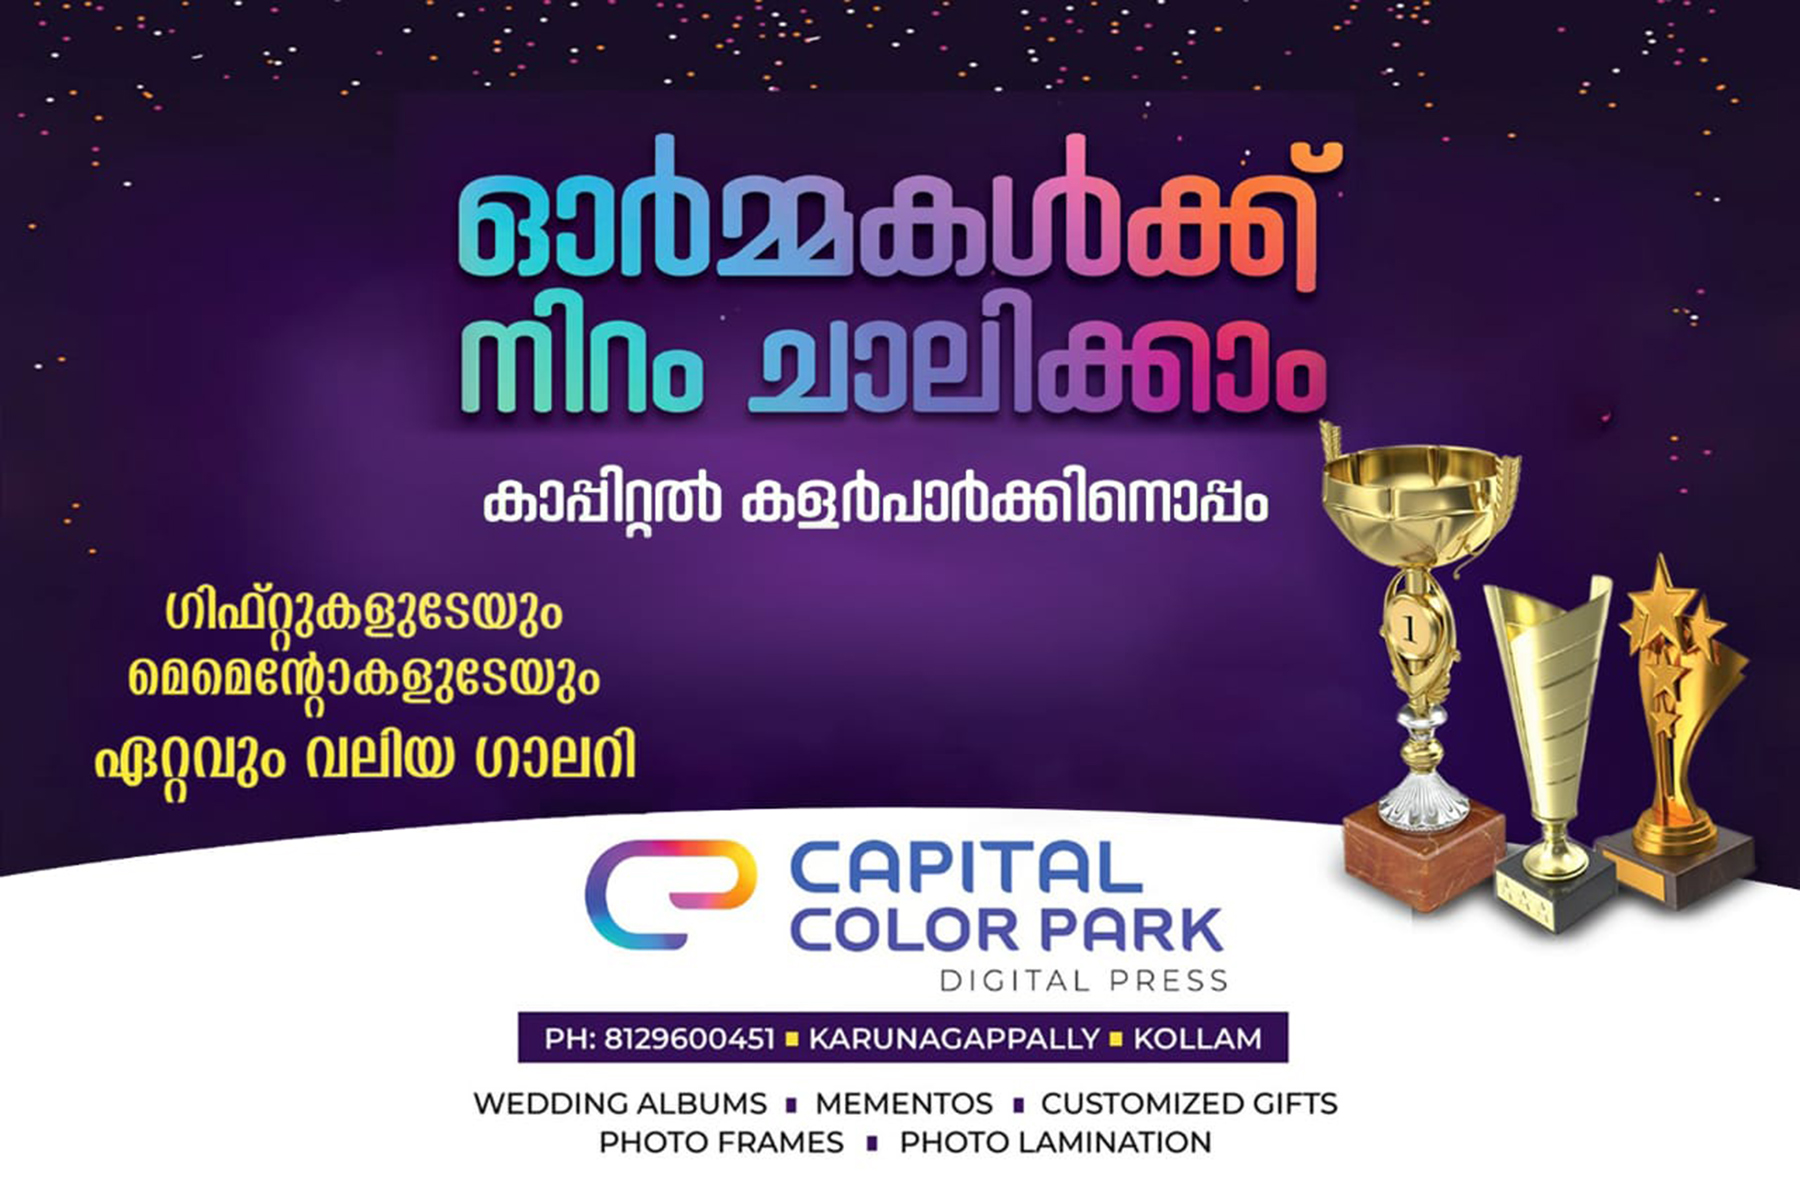 Capital Color Park